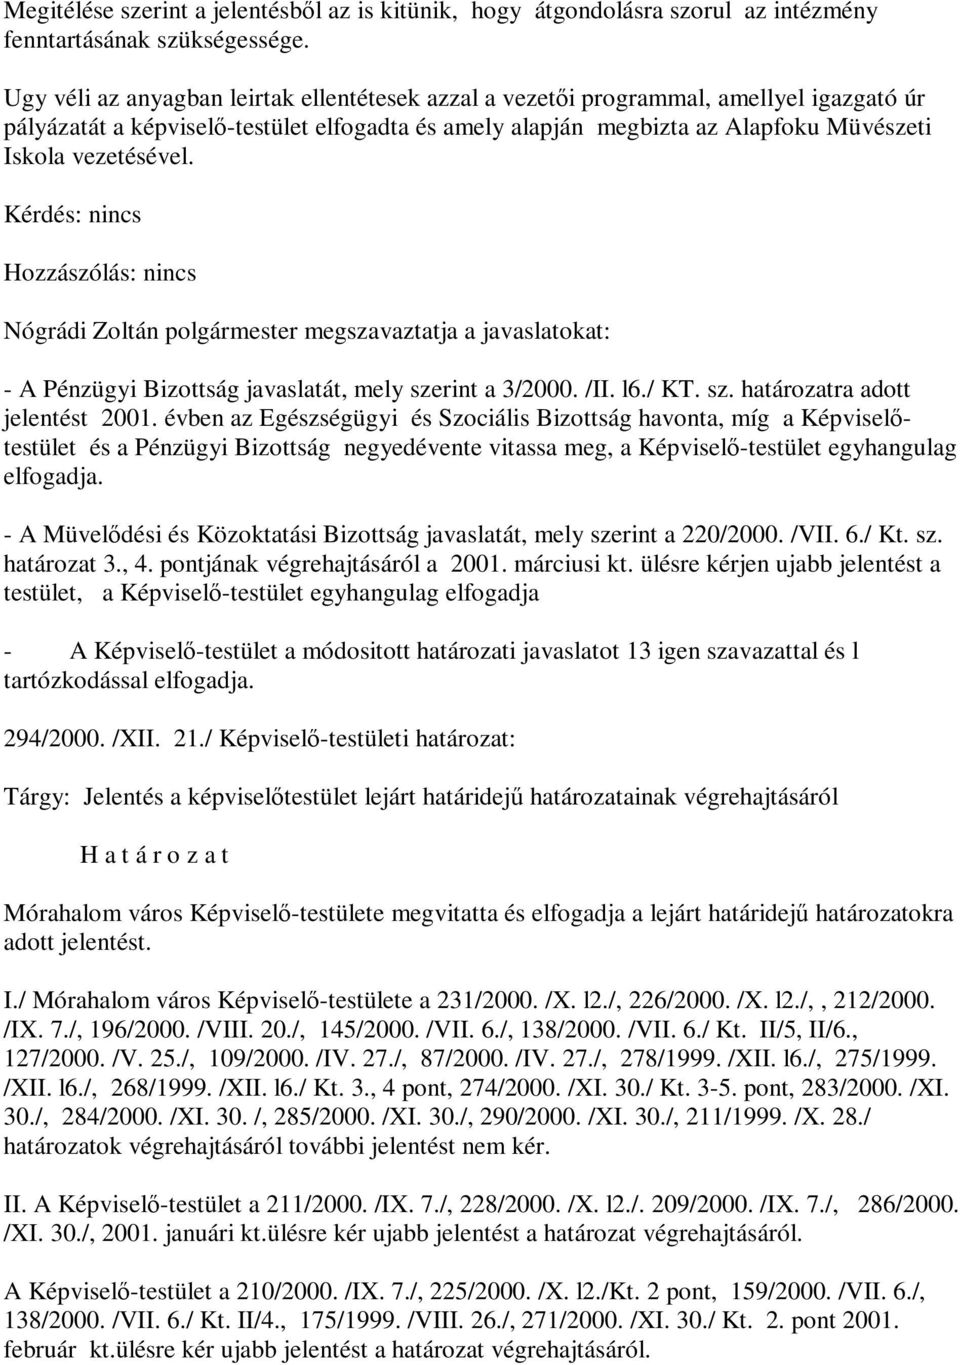 Nógrádi Zoltán polgármester megszavaztatja a javaslatokat: - A Pénzügyi Bizottság javaslatát, mely szerint a 3/2000. /II. l6./ KT. sz. határozatra adott jelentést 2001.